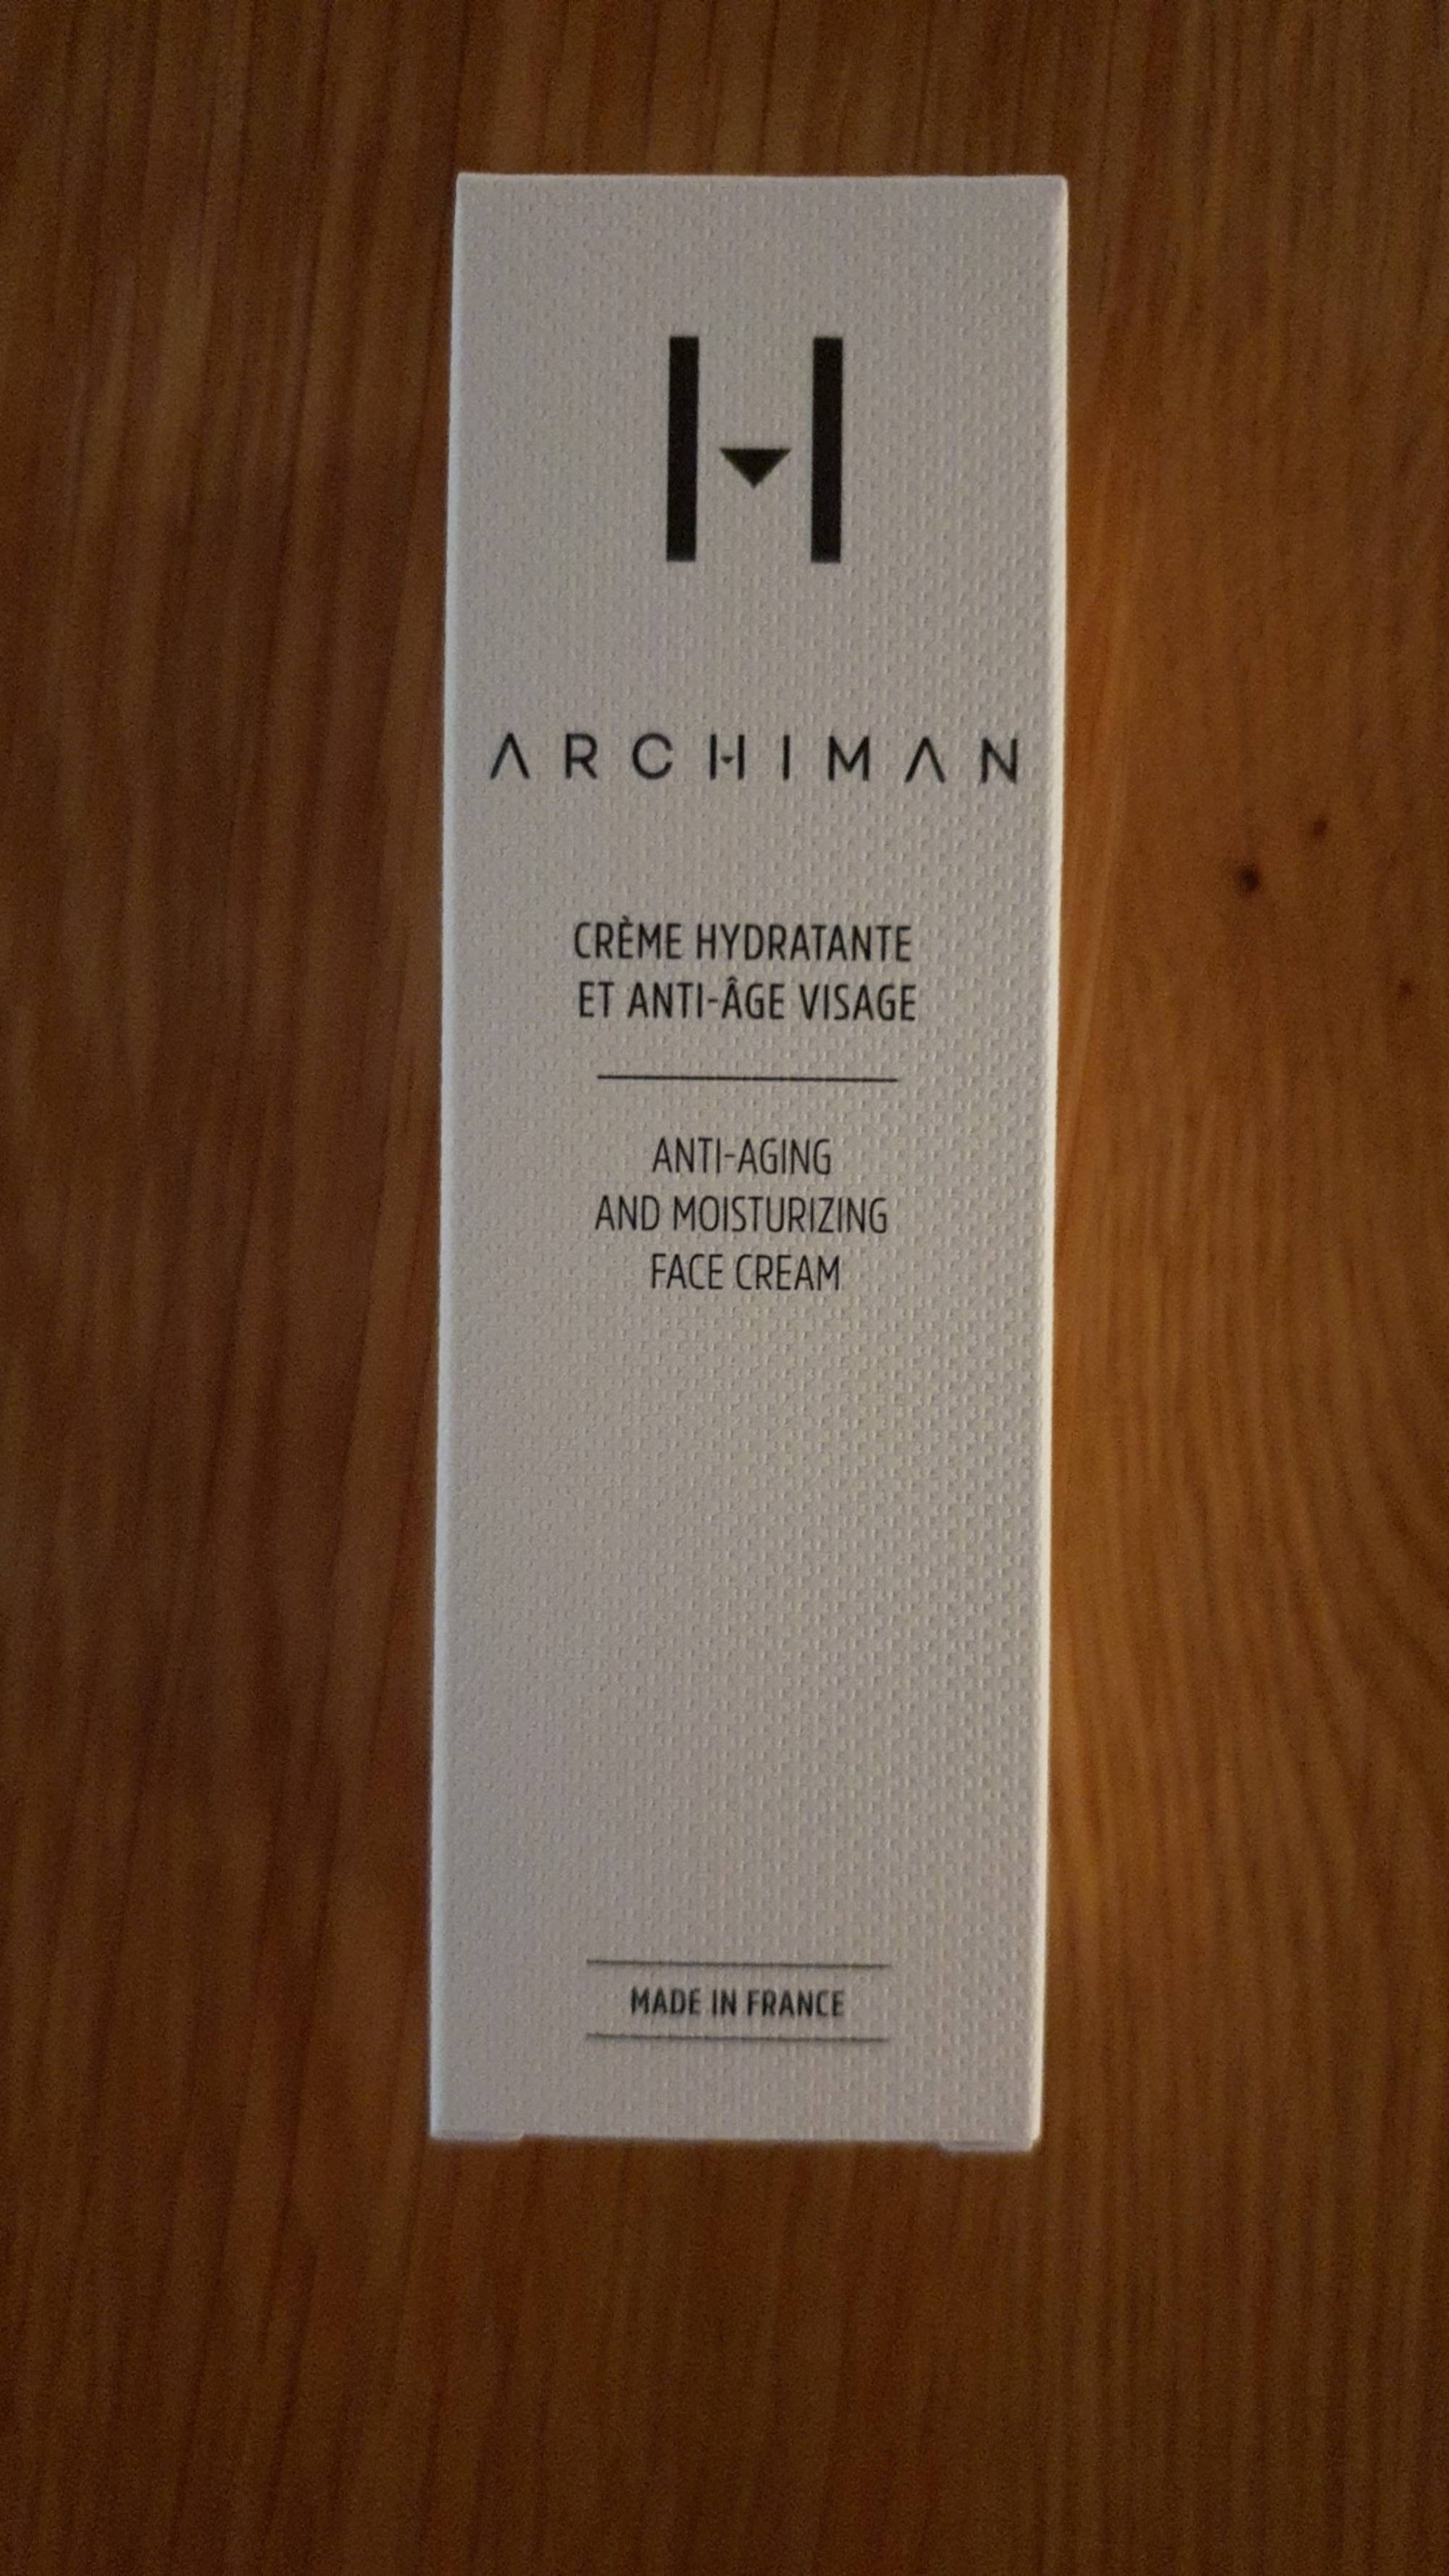 ARCHIMAN - Crème hydratante et anti-âge visage